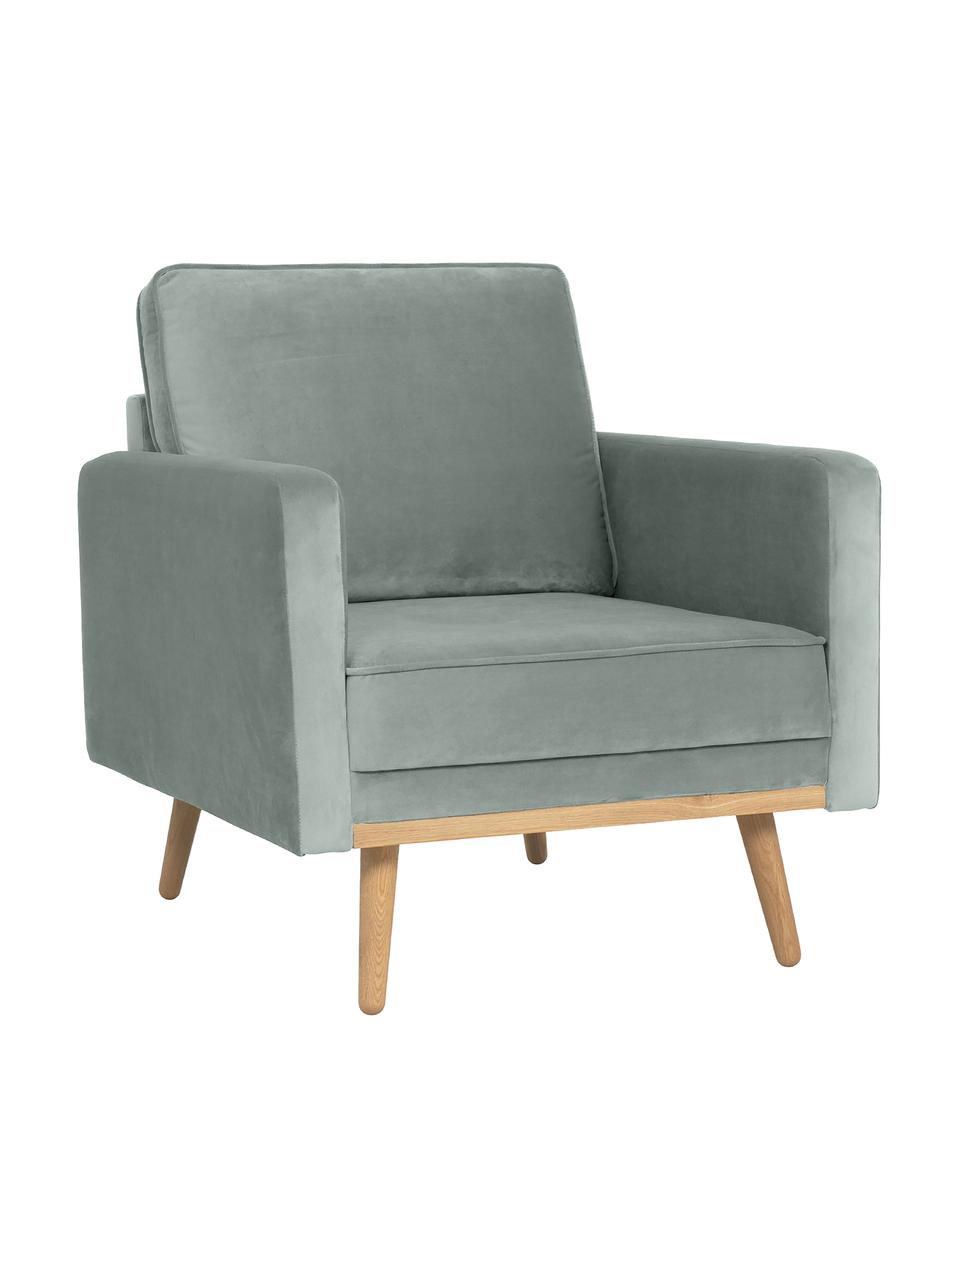 Fluwelen fauteuil Saint in saliekleurig met eikenhouten poten, Bekleding: fluweel (polyester) De ho, Frame: massief eikenhout, spaanp, Fluweel saliekleurig, B 85 x D 76 cm